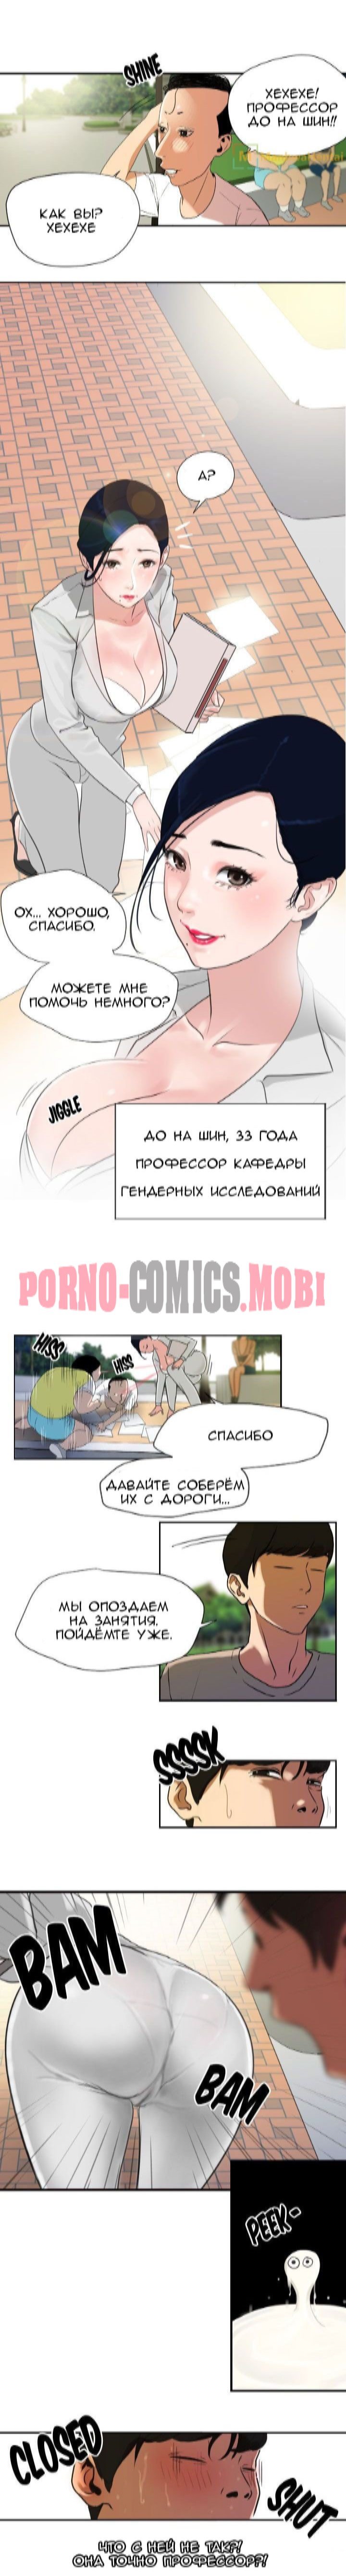 Порно Комикс Молниеотвод Часть 1-2 смотреть бесплатно онлайн